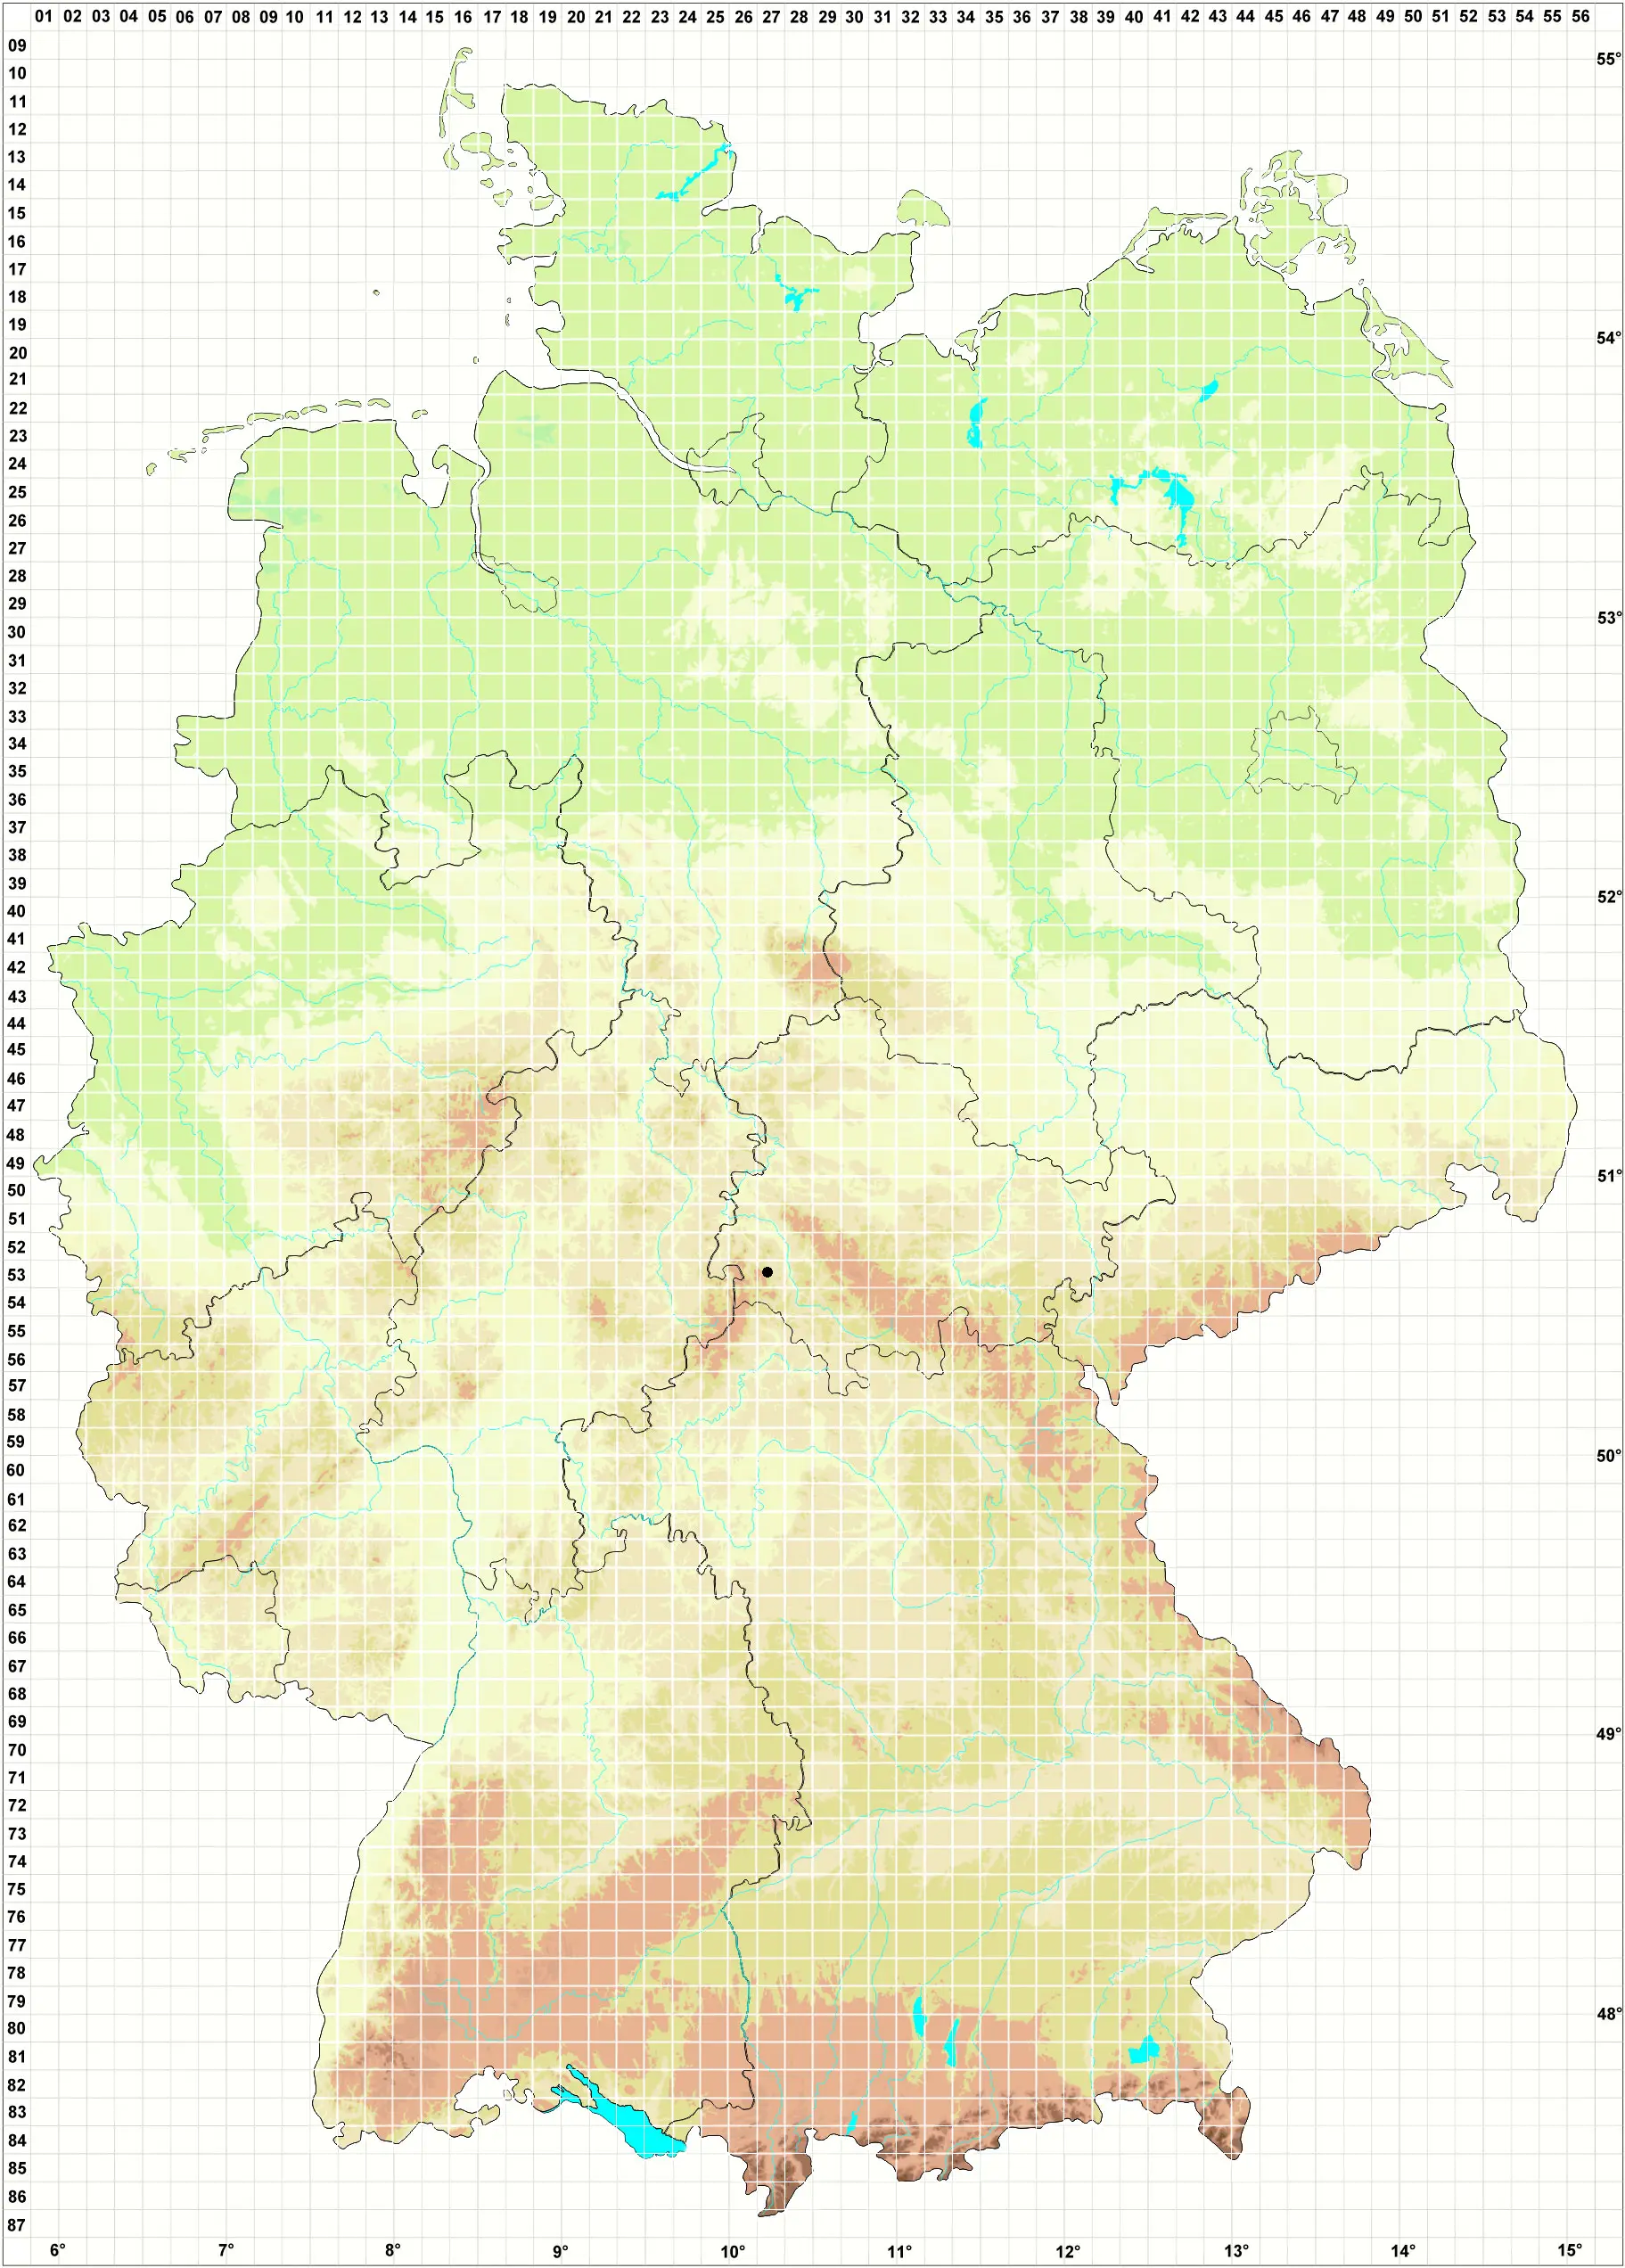 Karte H. Grünberg, D. Berger, J. Eckstein 20.06.2010